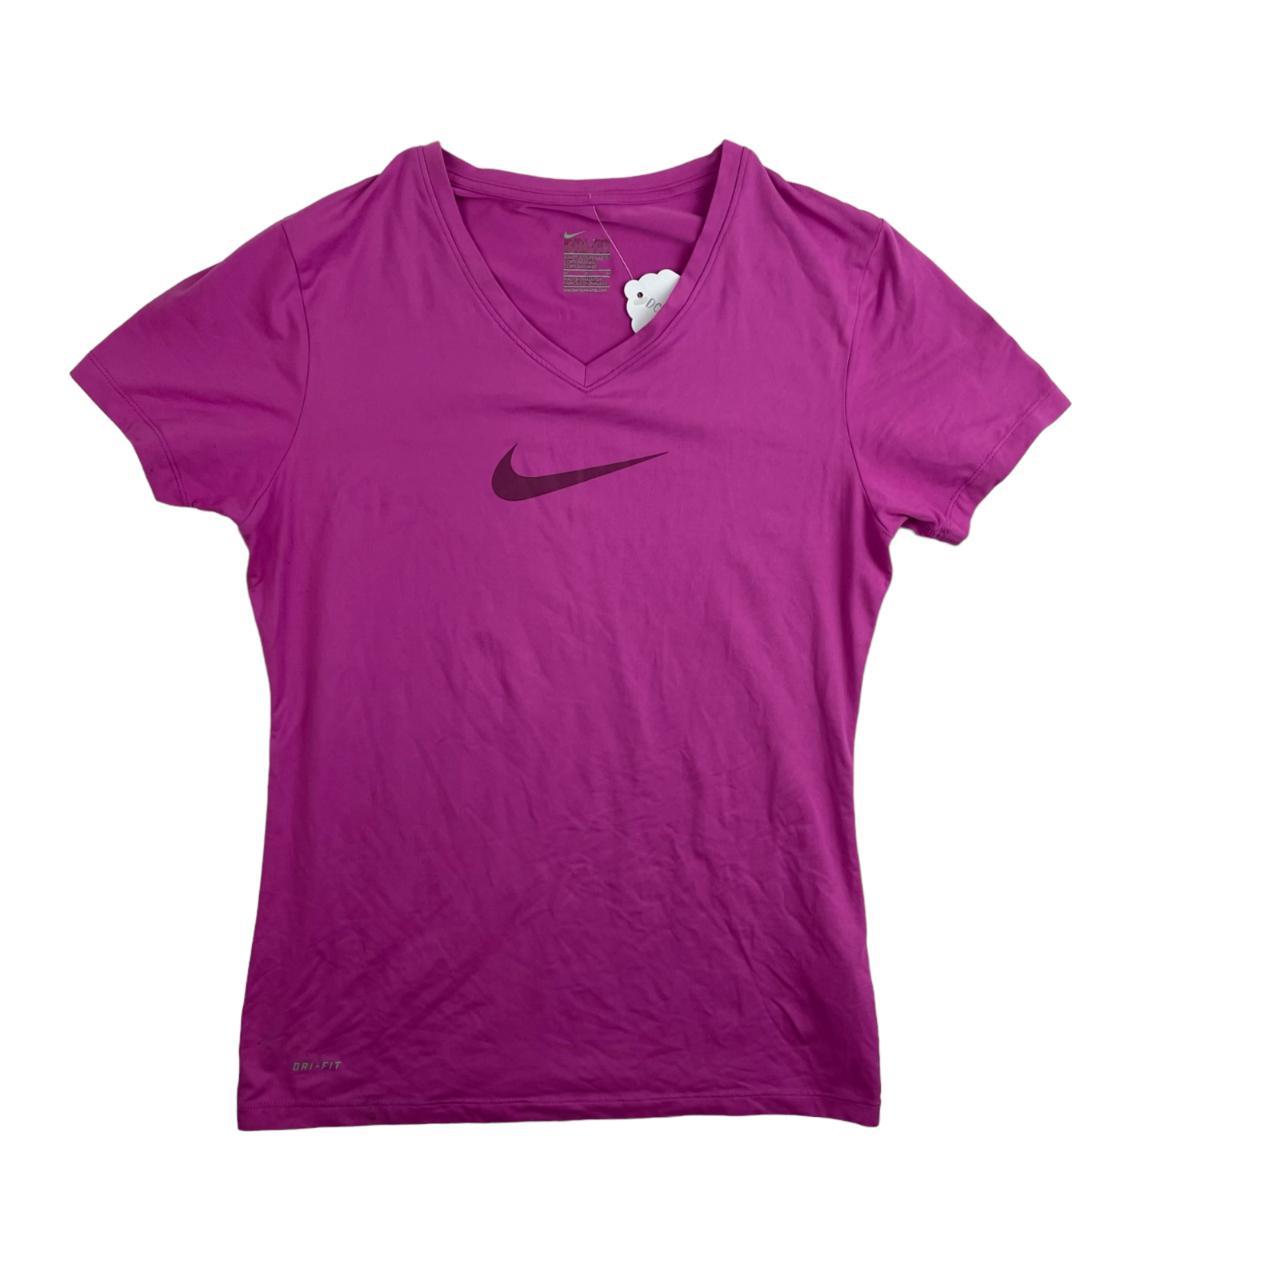 Nike Pink Short Sleeved Logo Printed T-Shirt For... - Depop